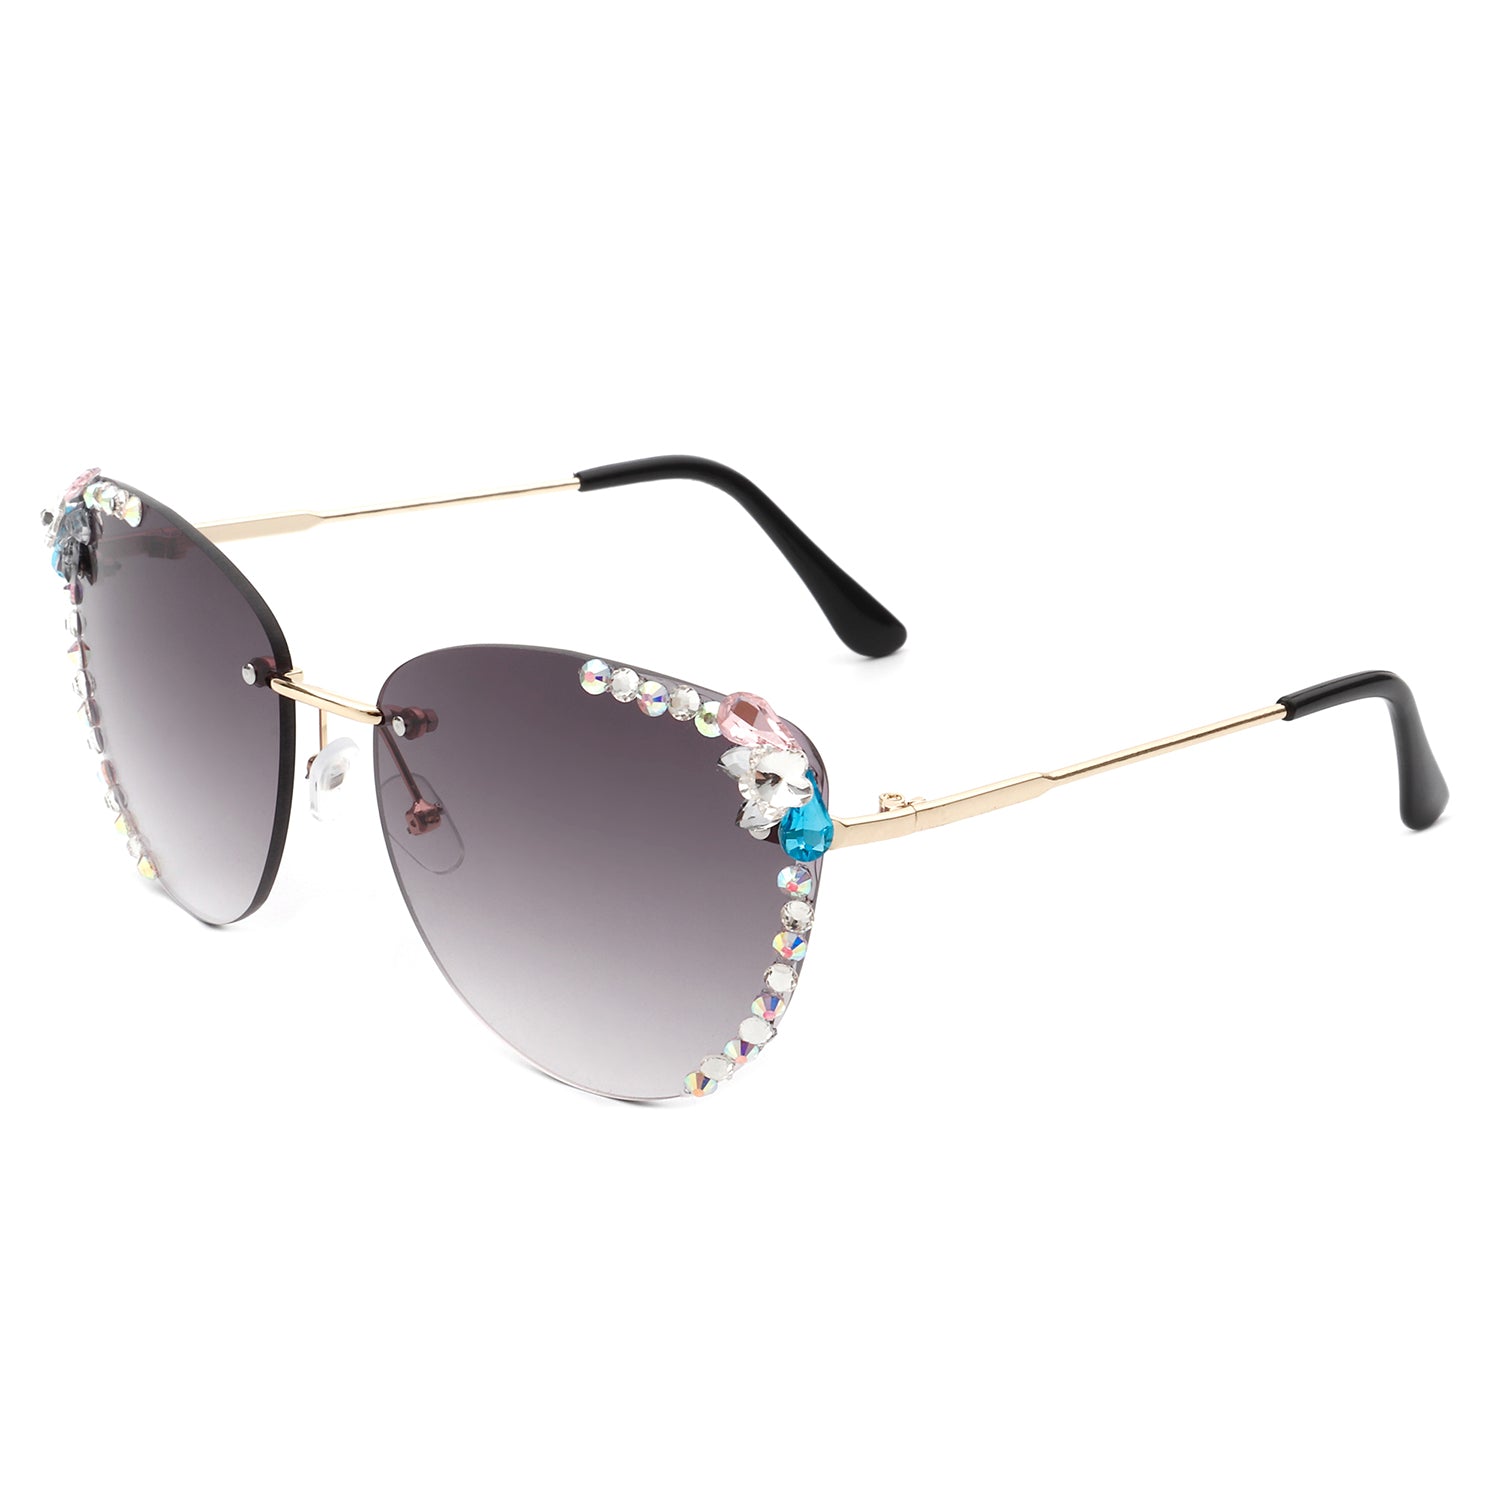 Aviator Sunglasses with Rhinestones - Women's Sunglasses Rhinestones Grey